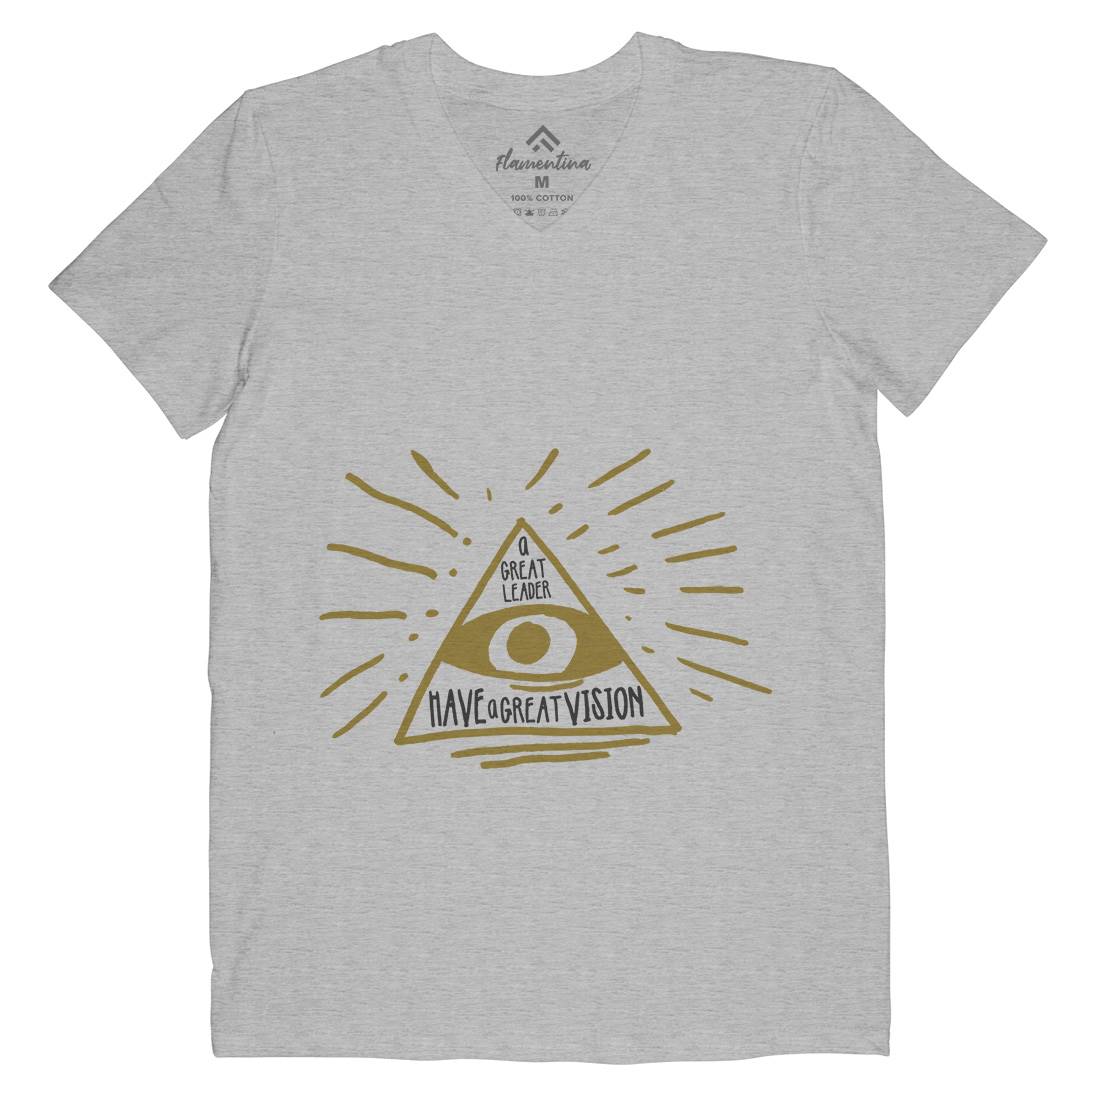 Great Leader Mens Organic V-Neck T-Shirt Illuminati A322